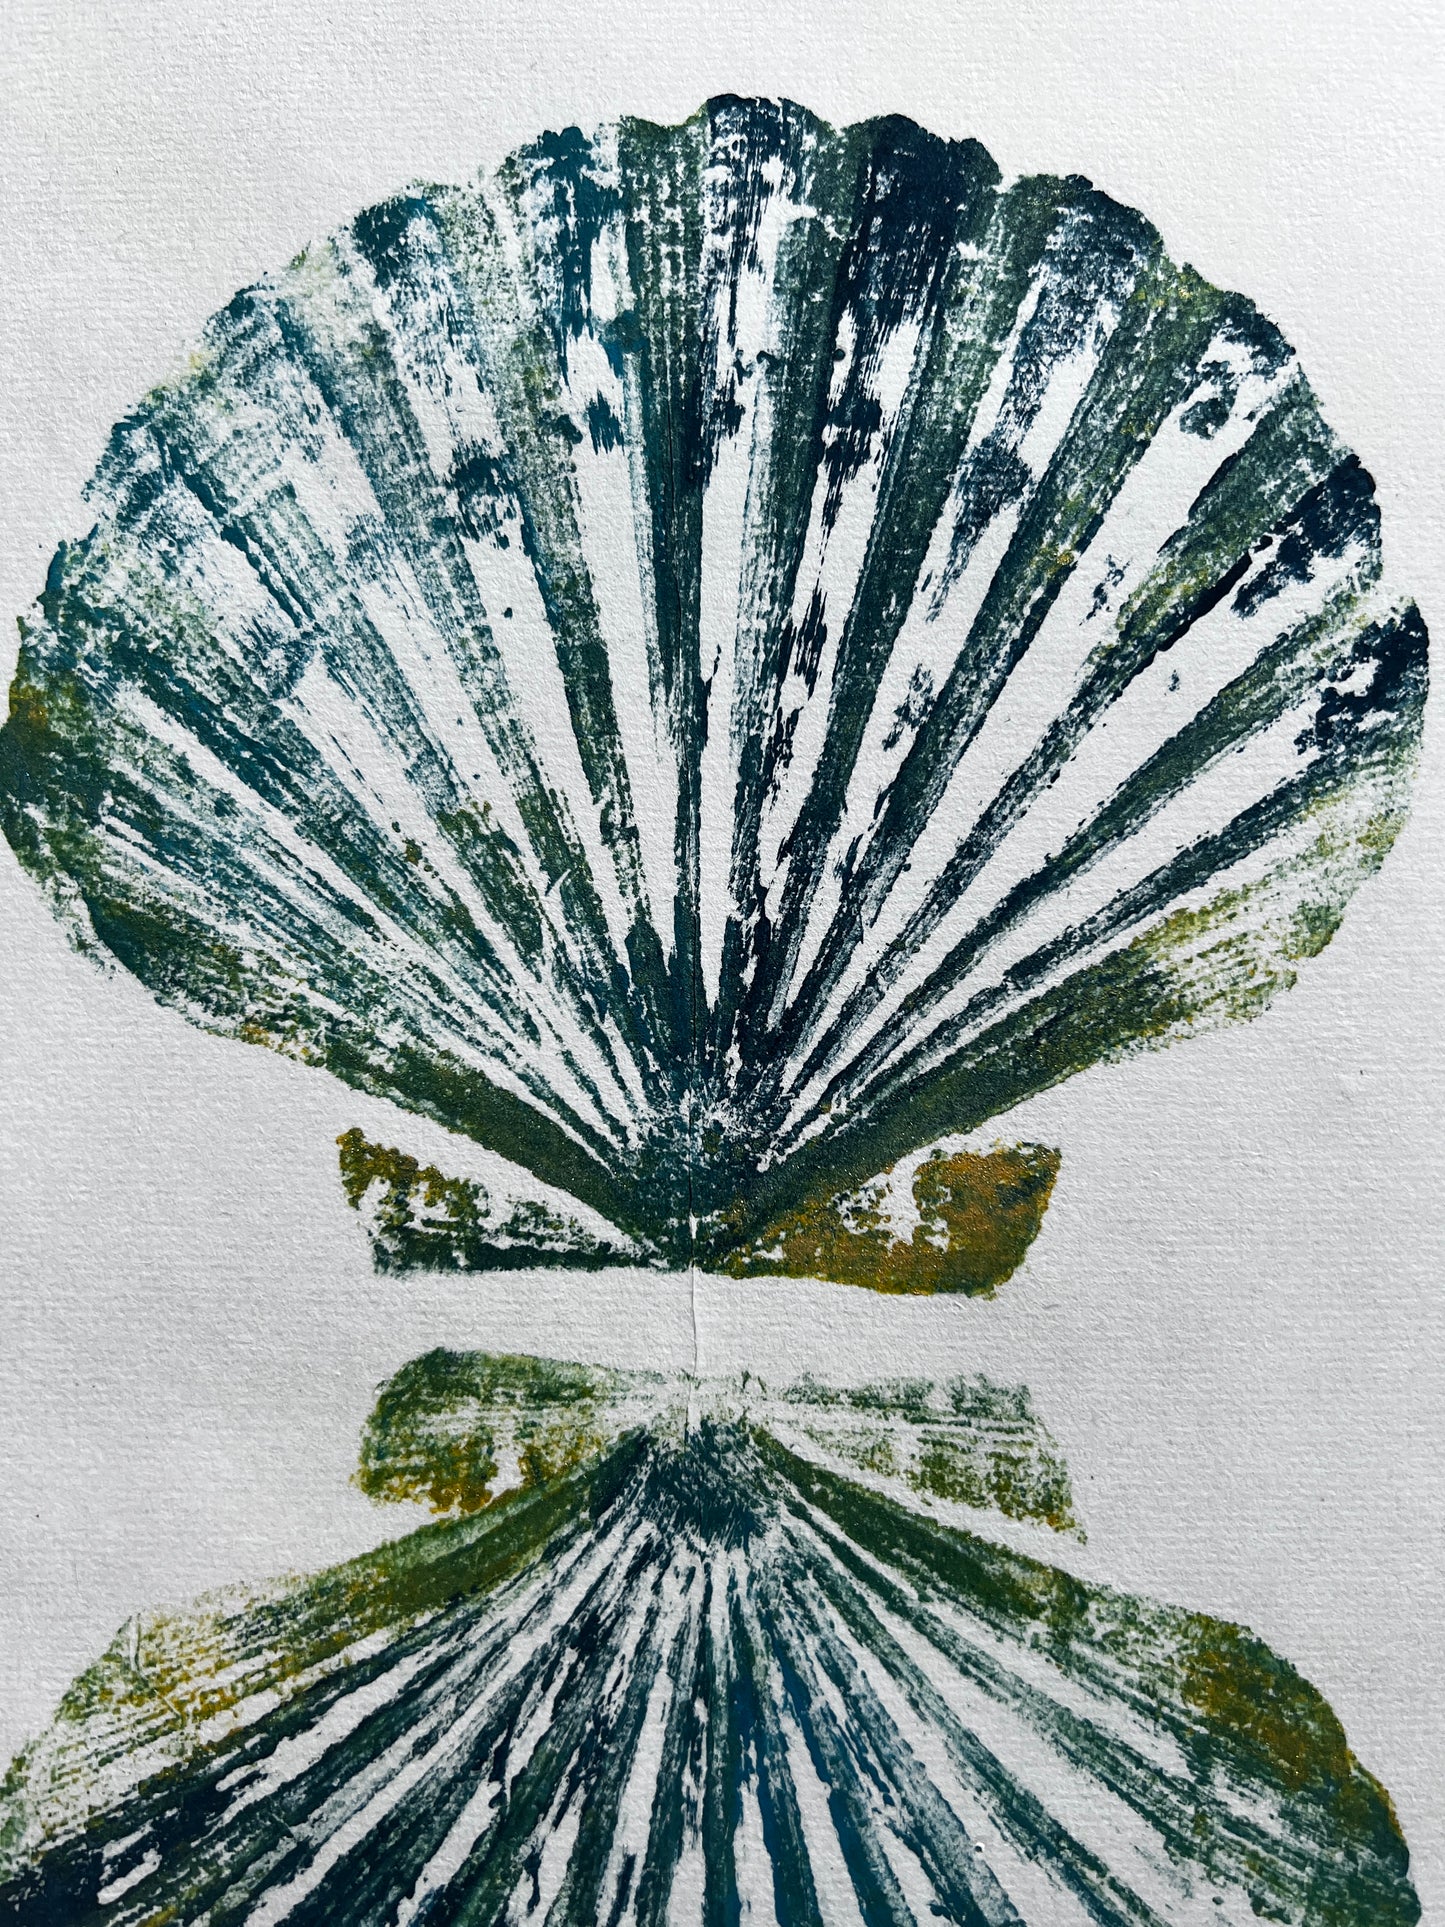 Scallop Shell Gyotaku Print, Wet Mounted